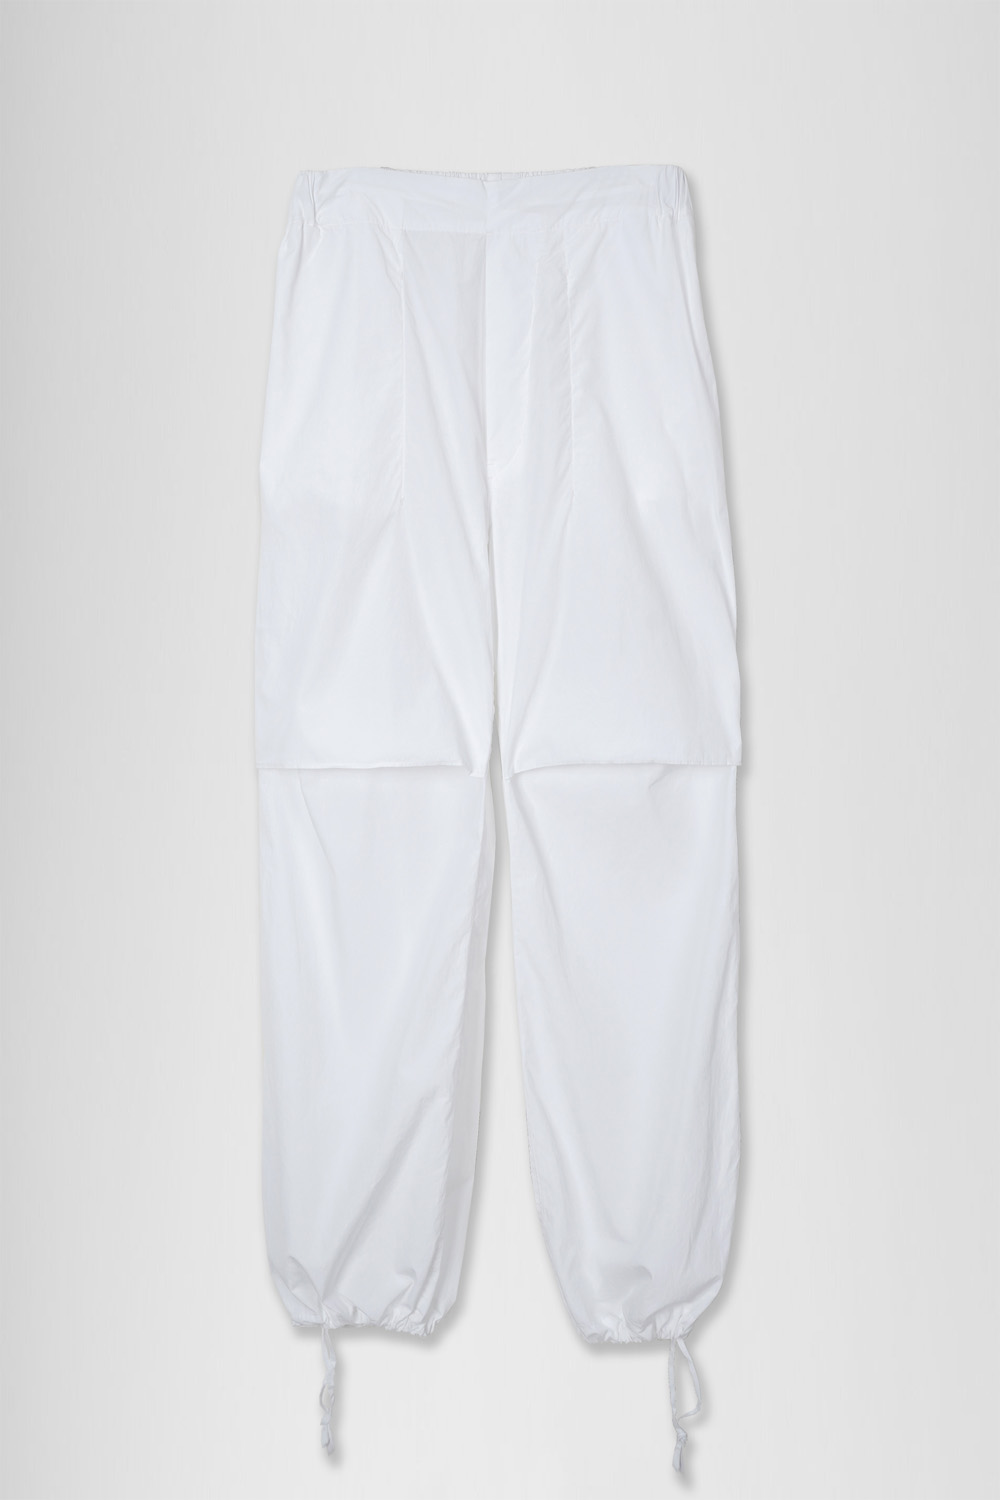 Garments Dyed Elastin Pants_White